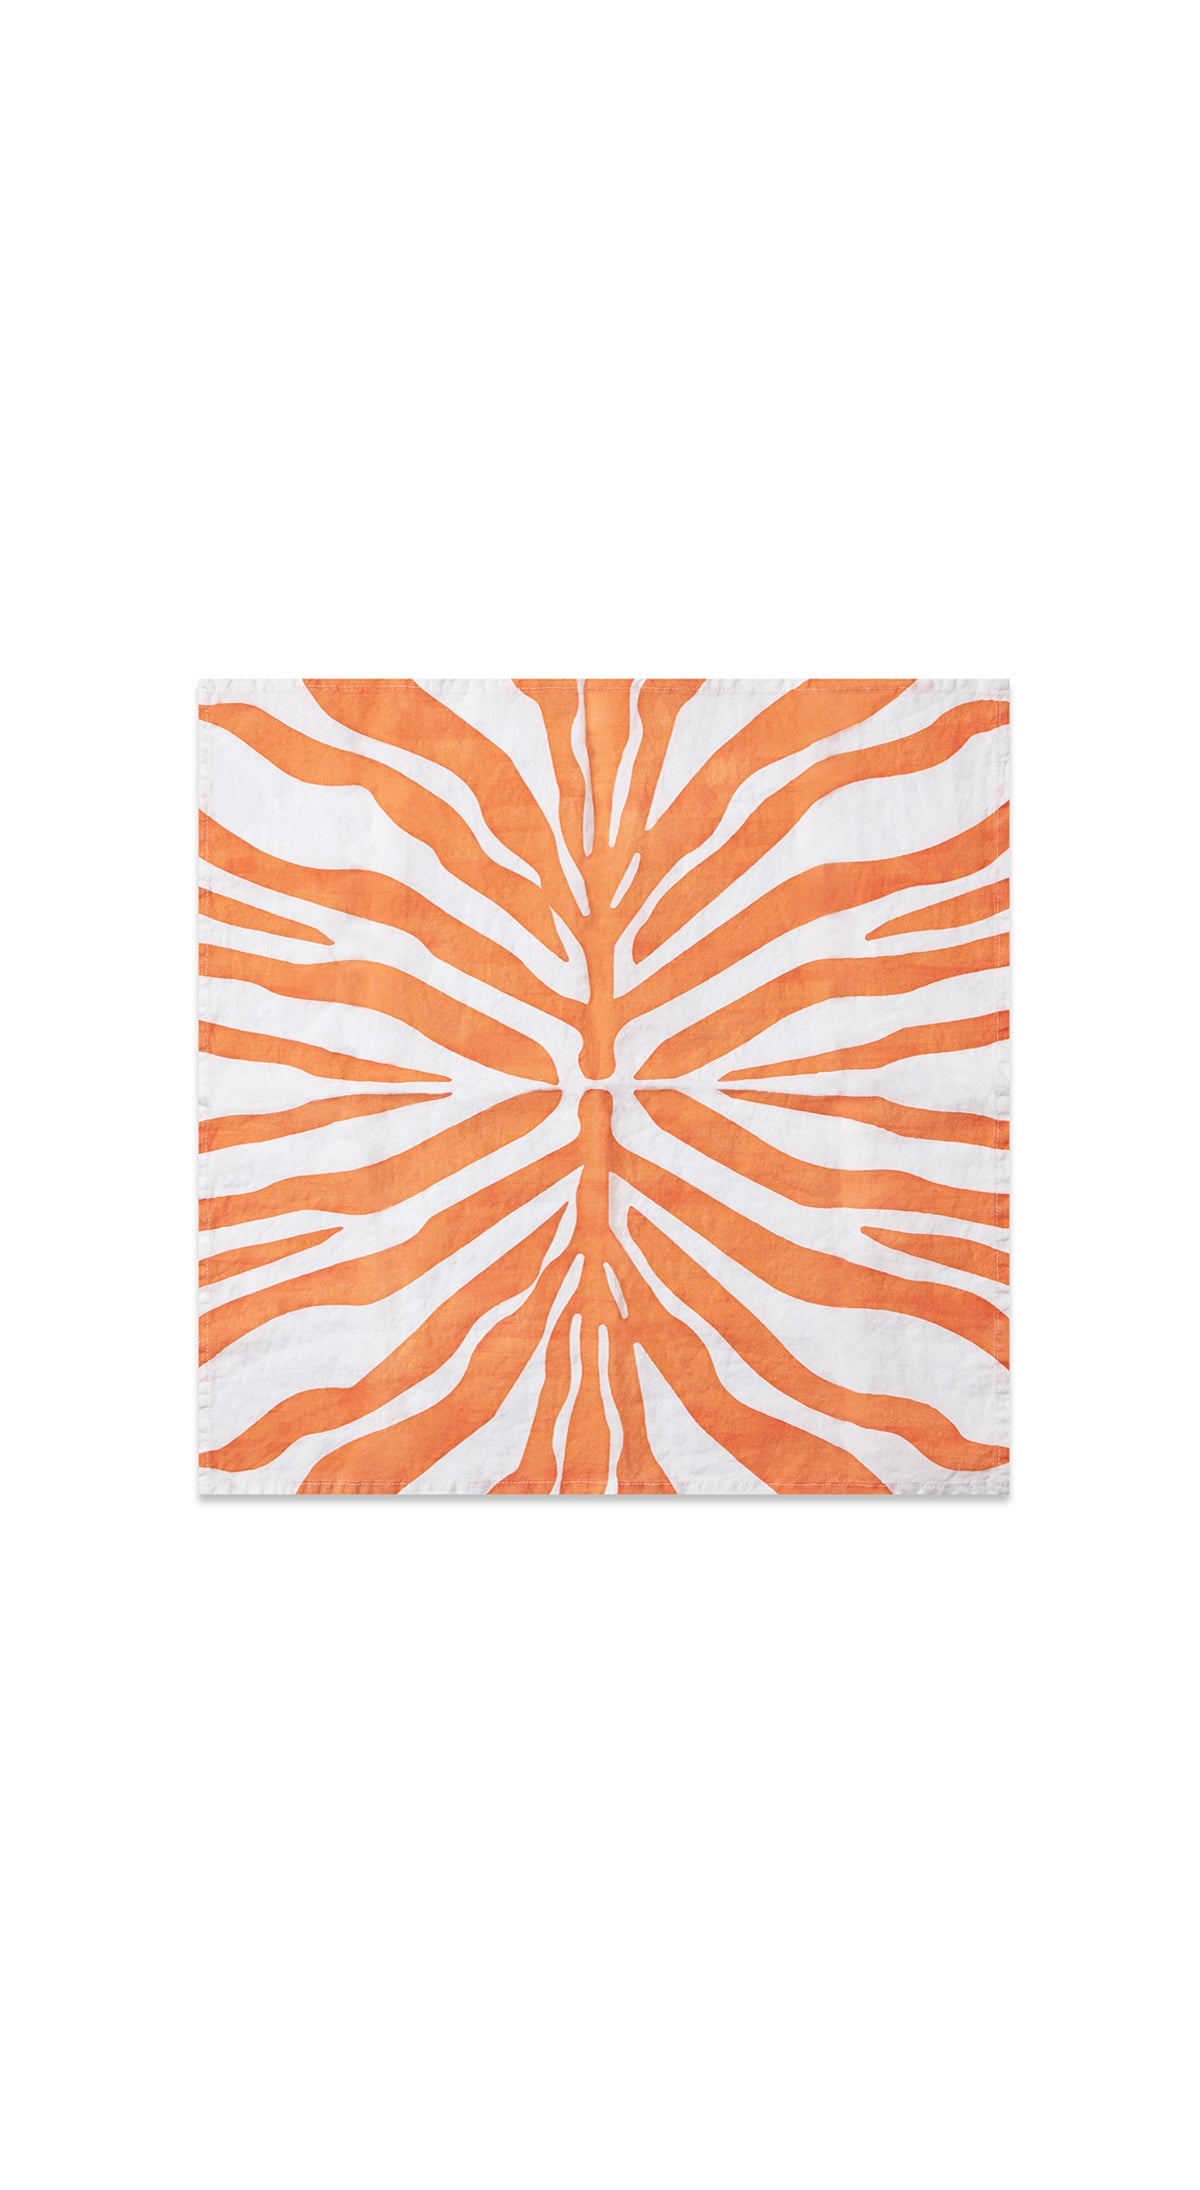 Zebra Linen Napkin in Tangerine Orange, 50x50cm